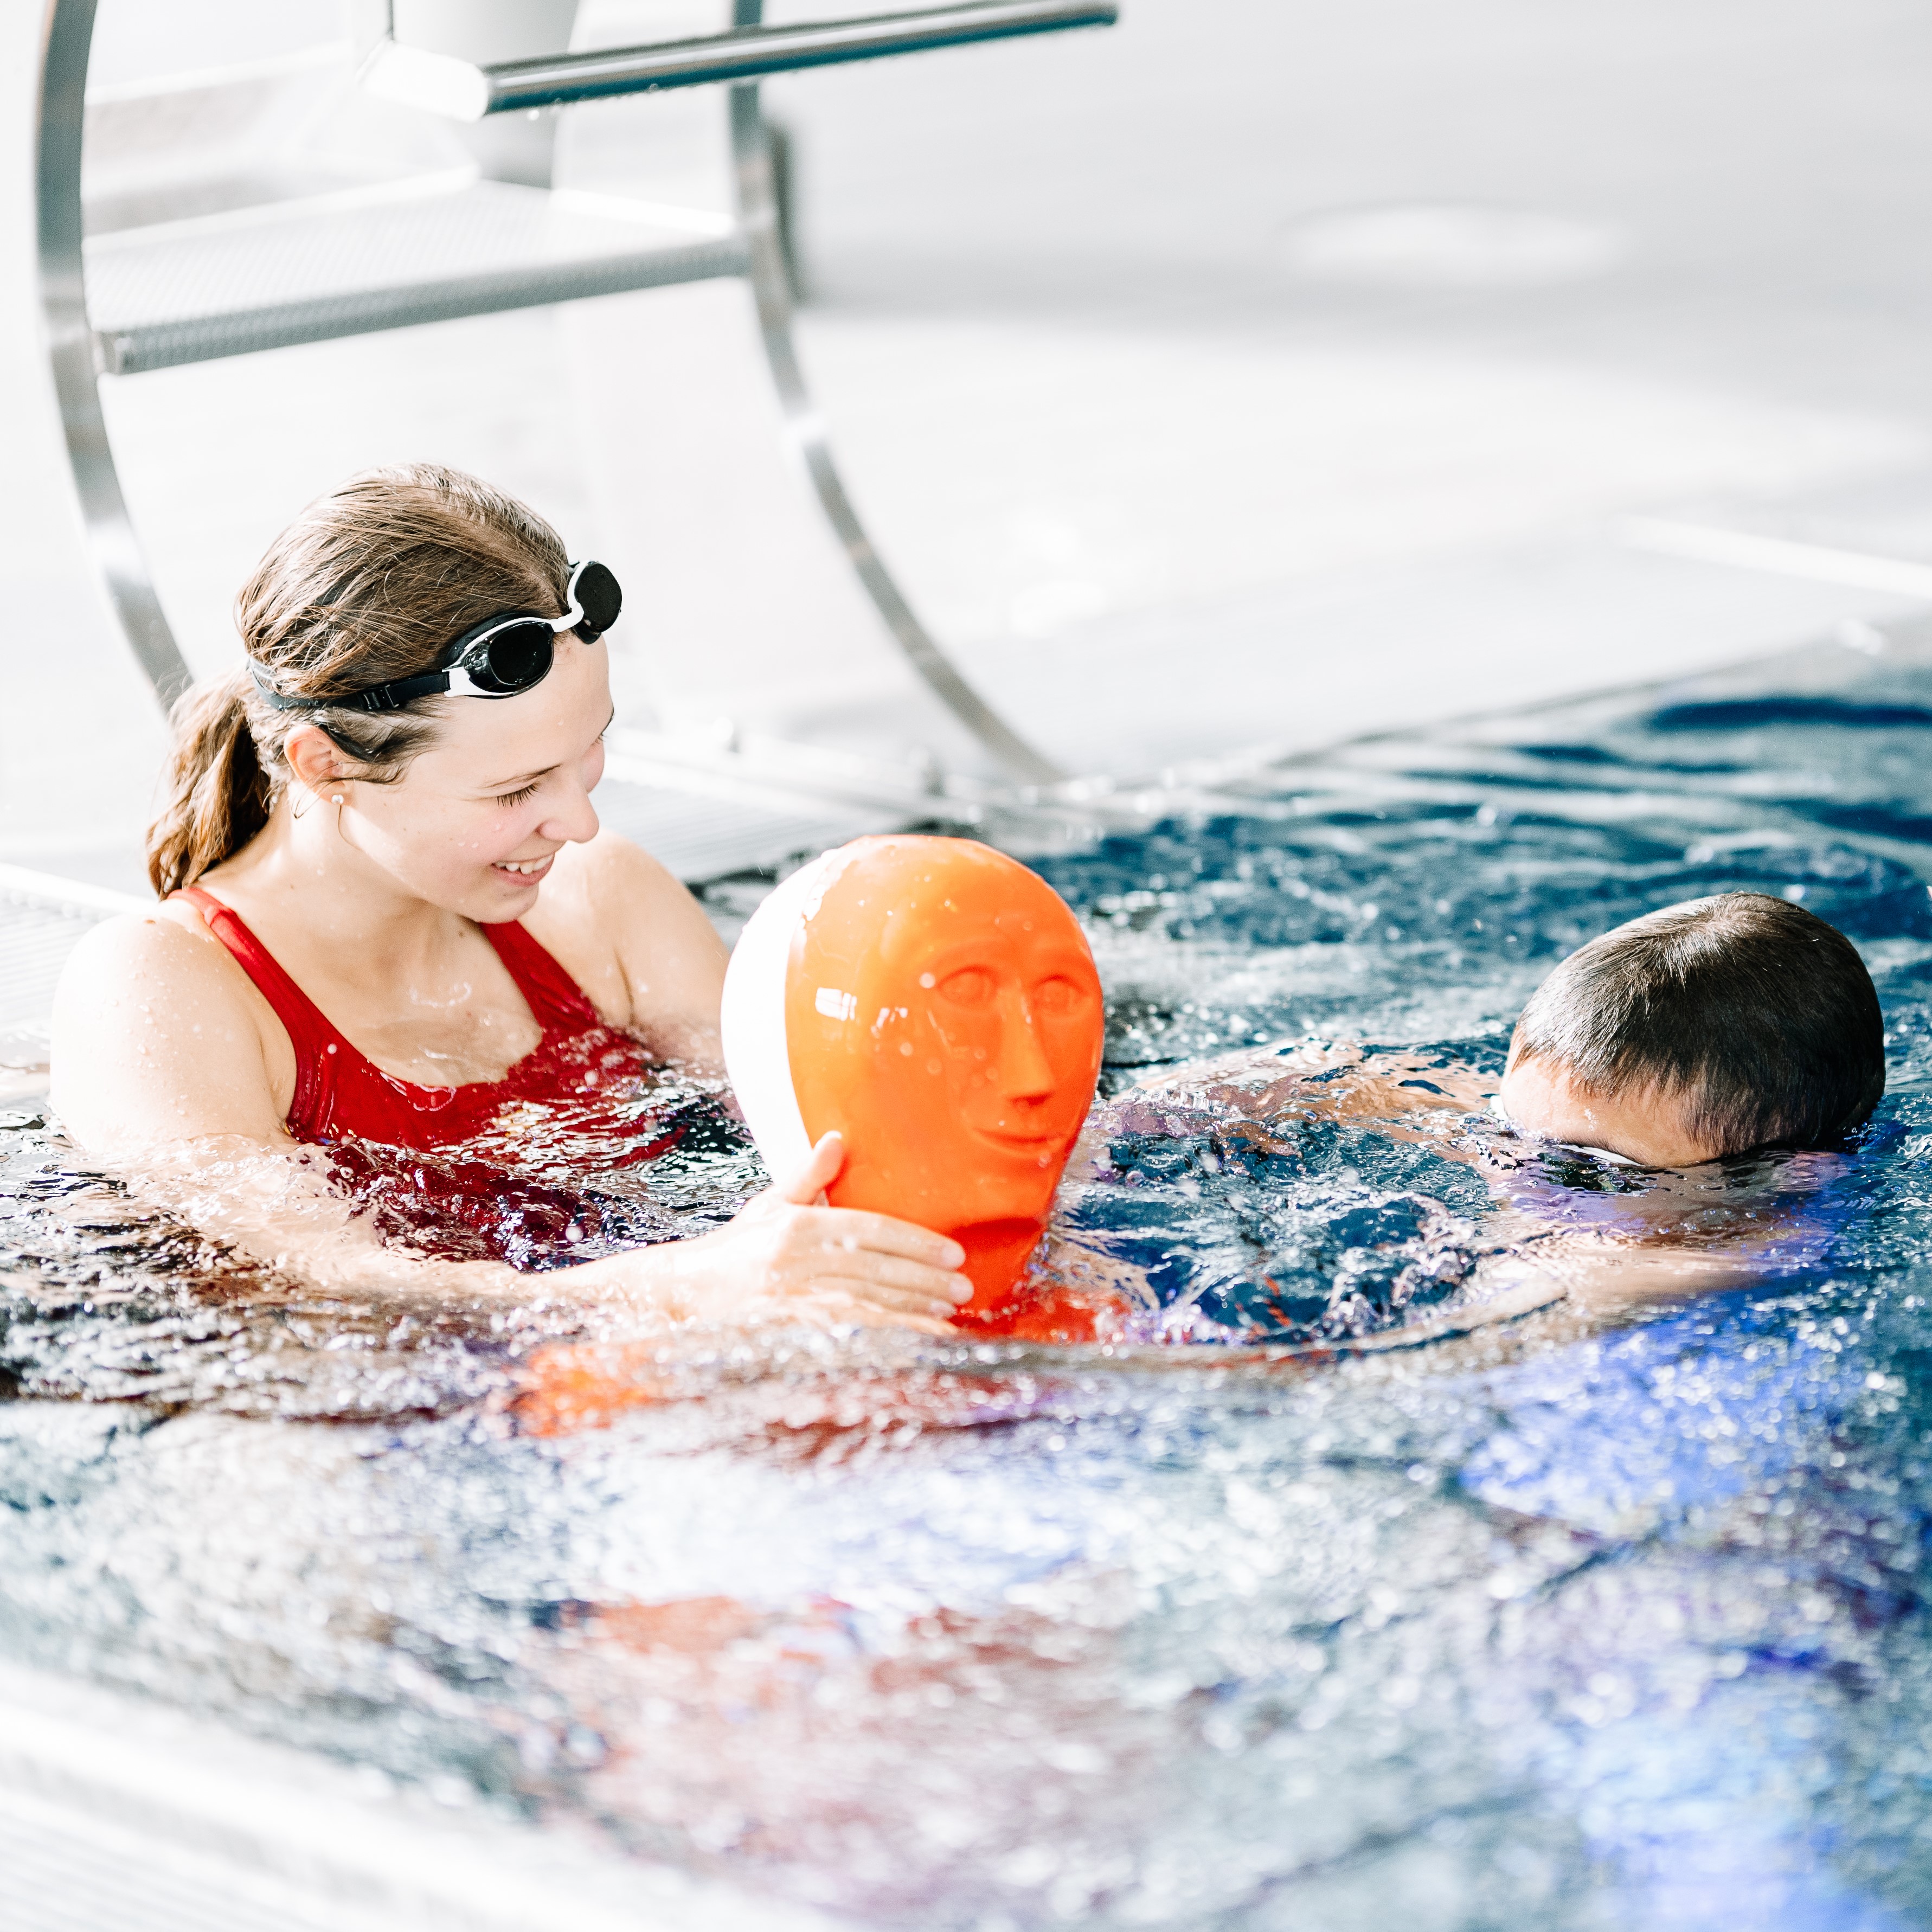 Ab 10 Jahren beginnt die interne Ausbildung von Rettungsschwimmern mit dem Juniorretter, in unseren wöchentlichen Trainingsabenden.